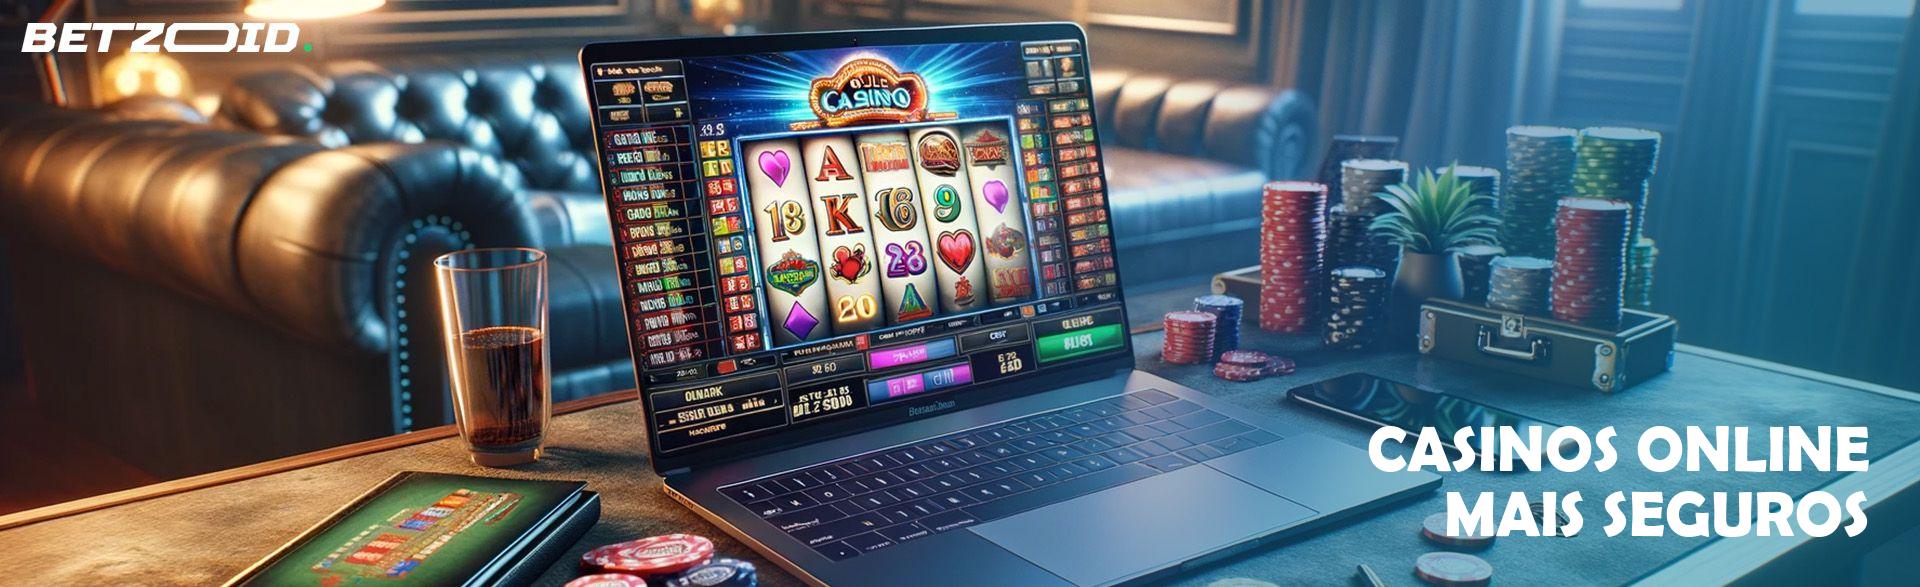 Casinos Online Mais Seguros.